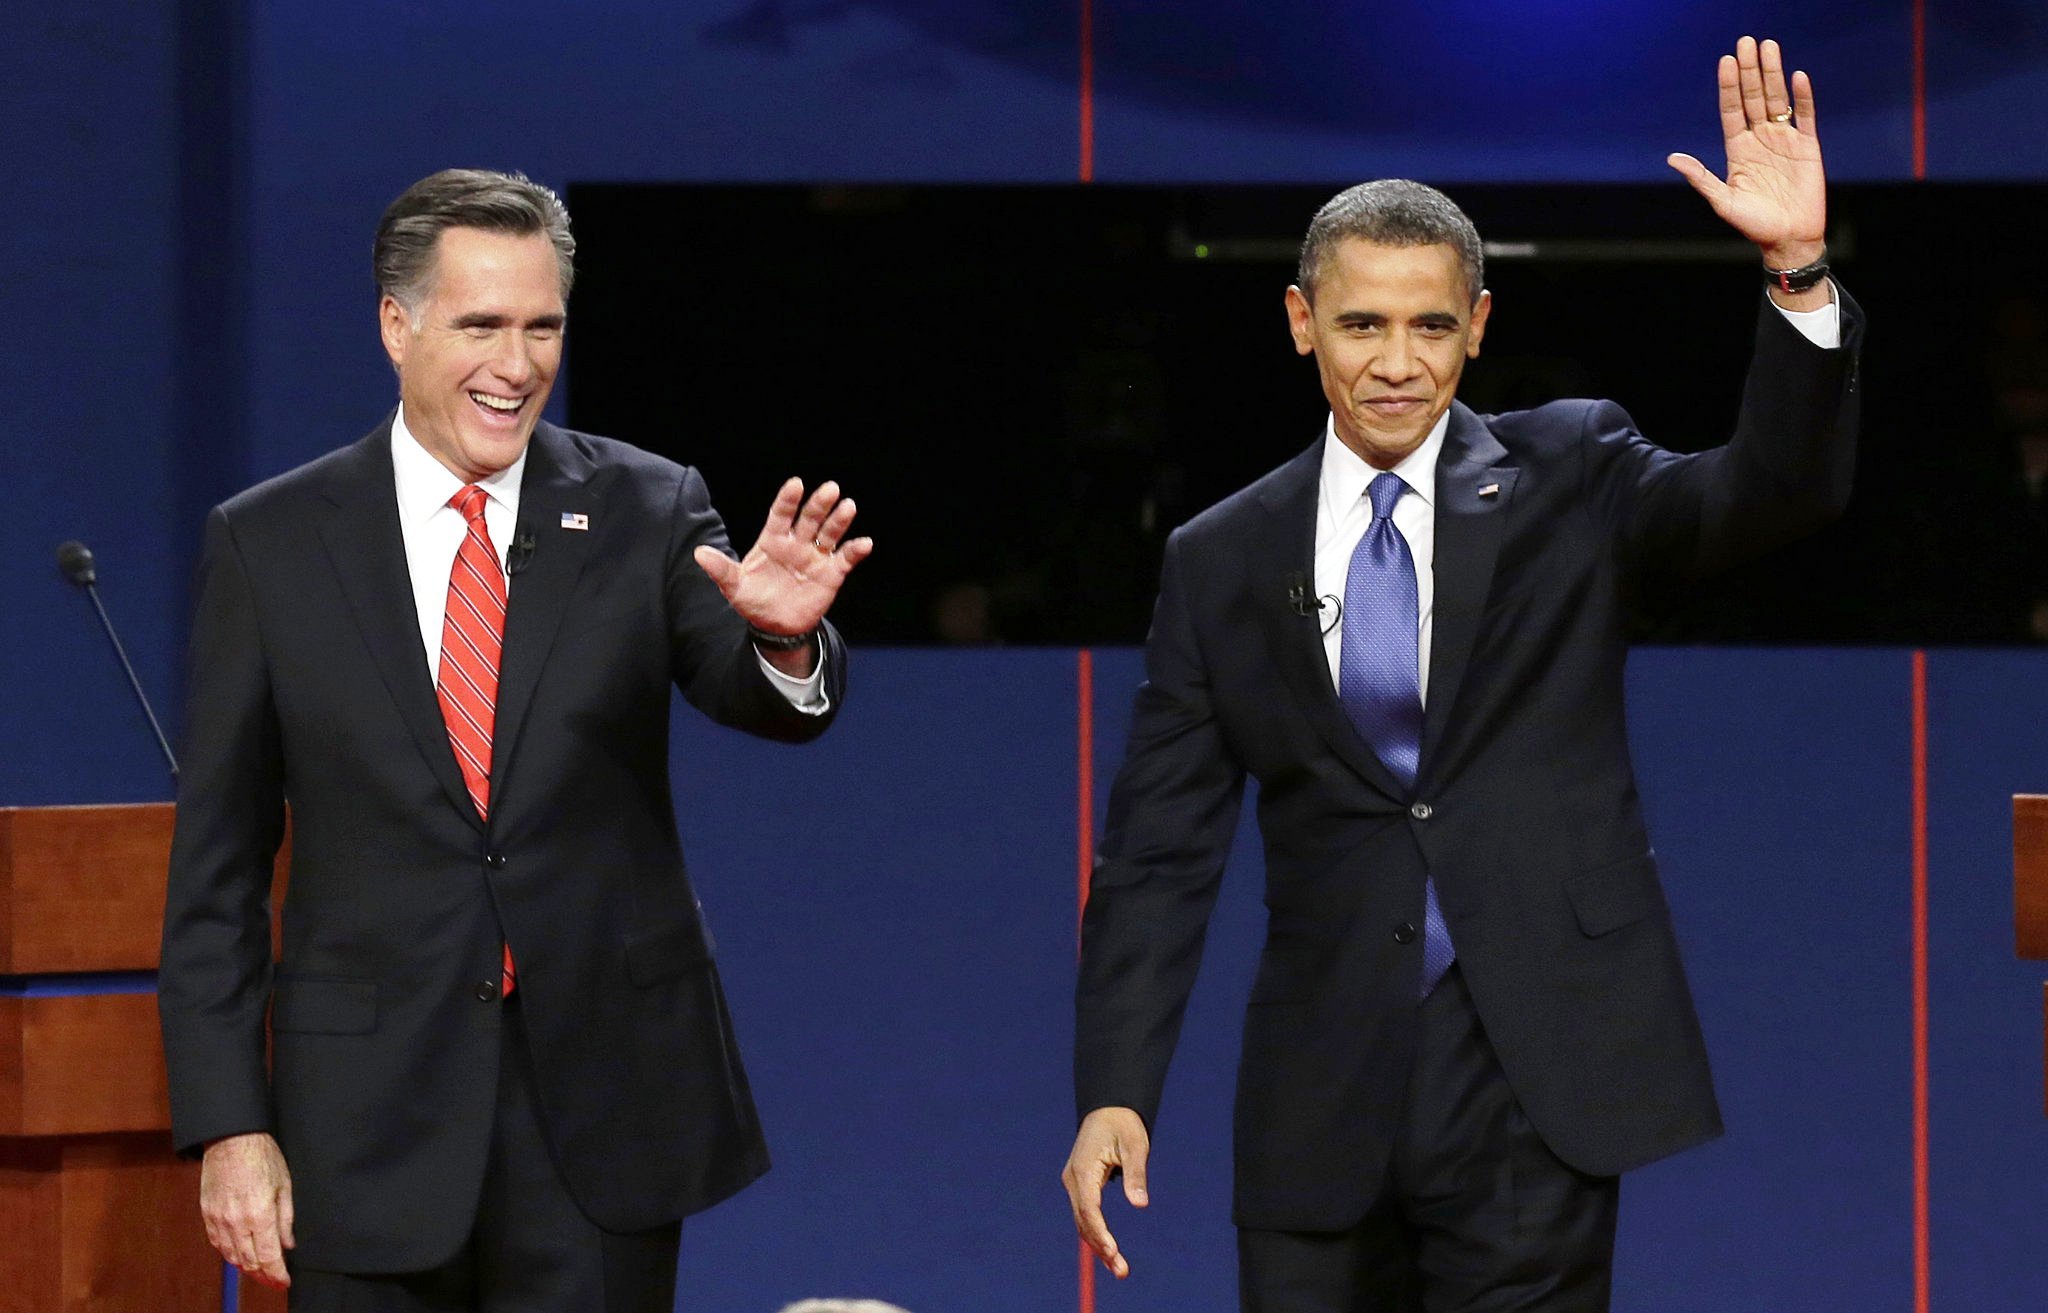 Romney vs Obama. Mitt vs mit.